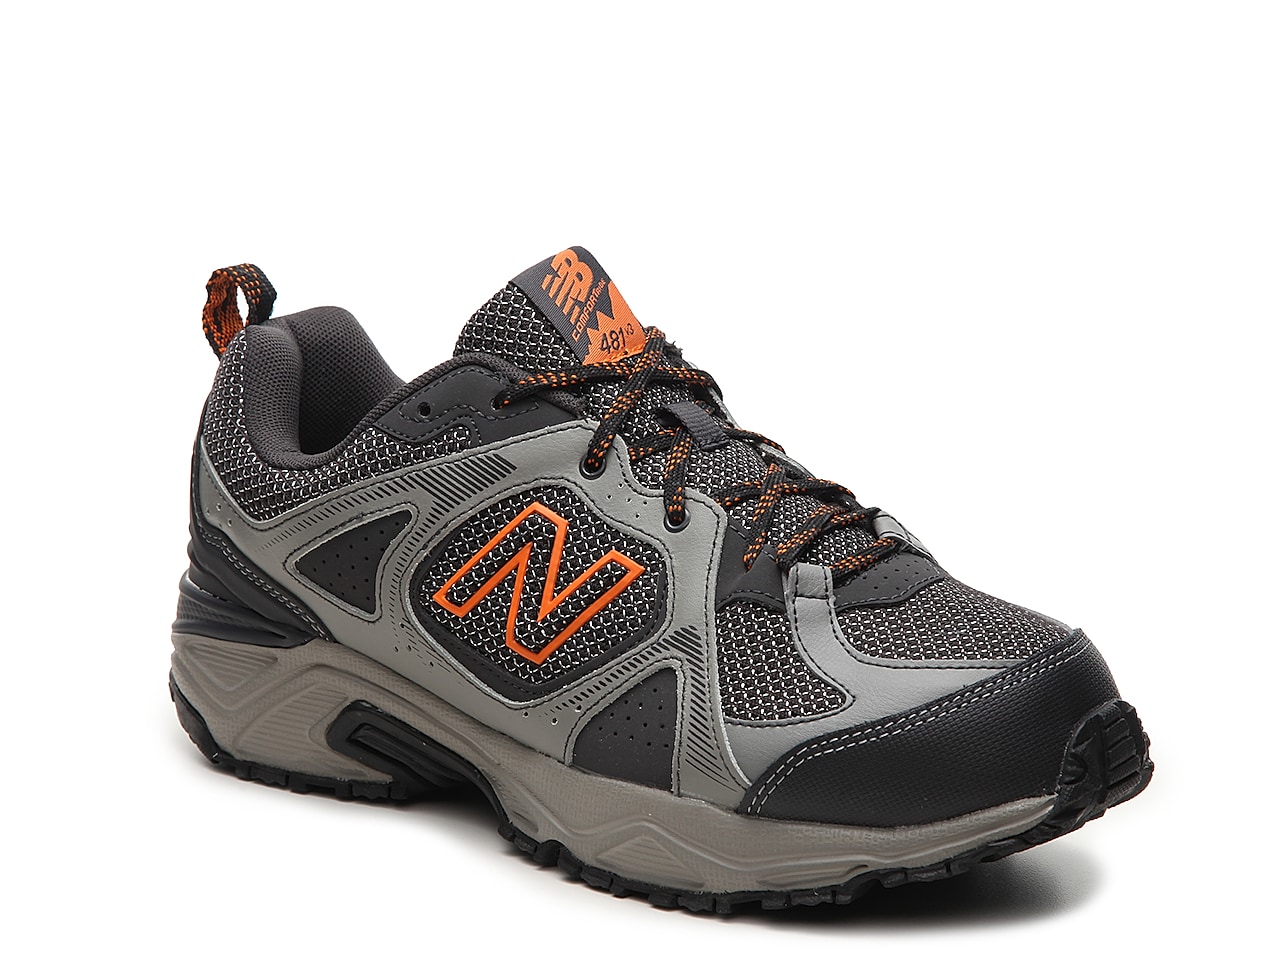 New Balance 481 v3 Trail Running Shoe - Men's